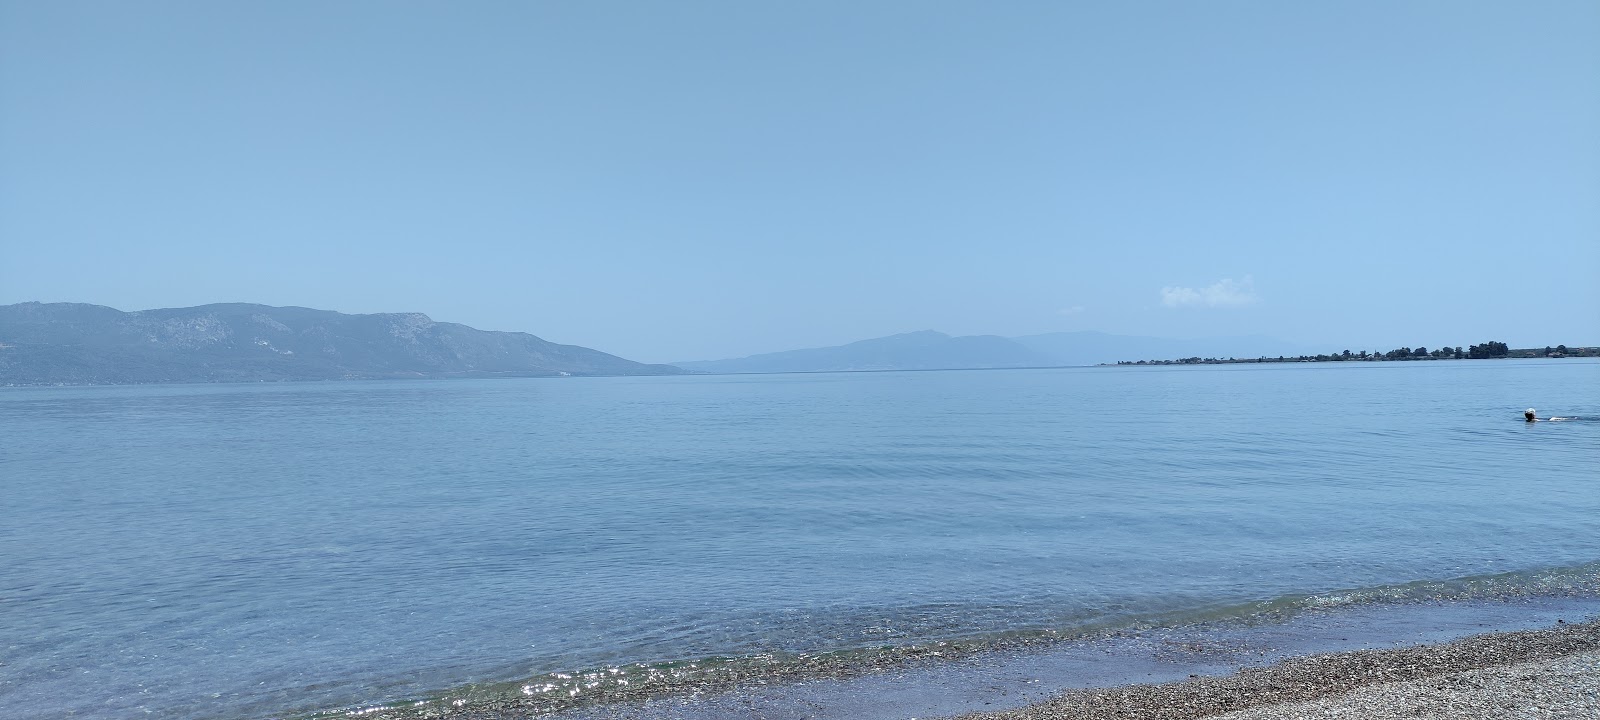 Fotografie cu Agios Konstantinos 2 cu o suprafață de apă verde deschis